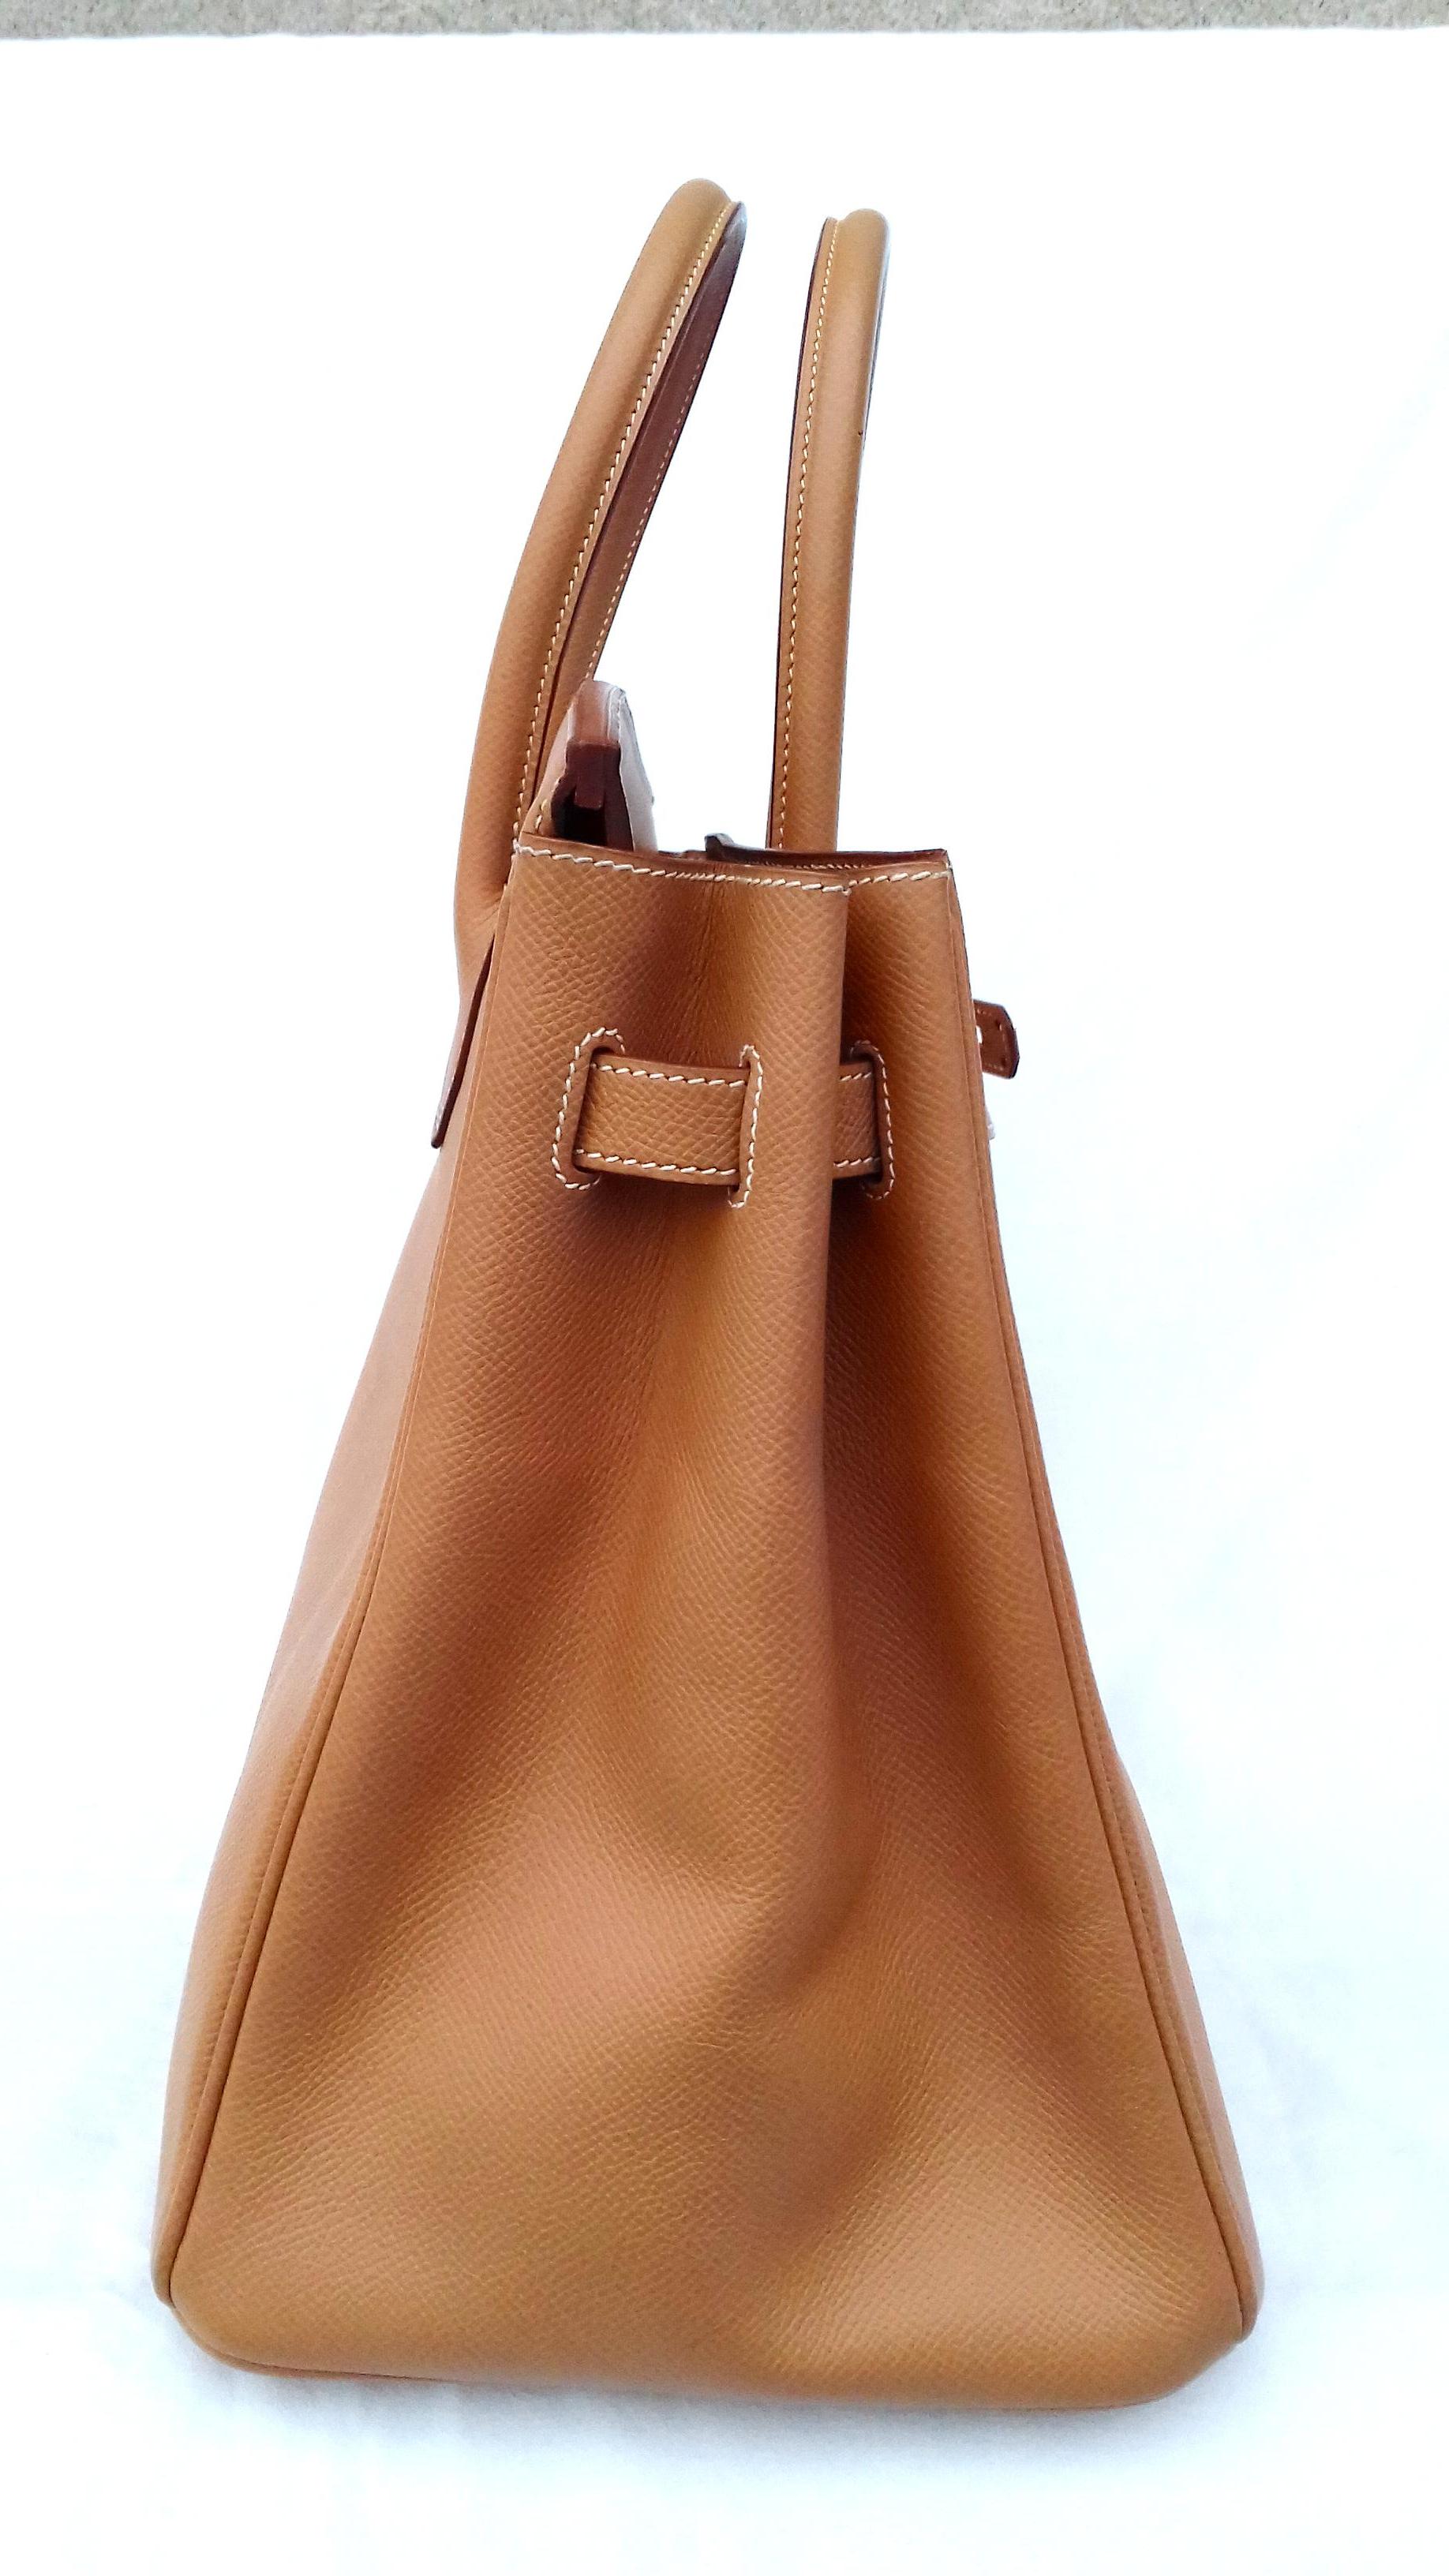 Hermès Birkin Top Handle Bag Naturel Epsom Leather Gold Hdw 35 cm 7